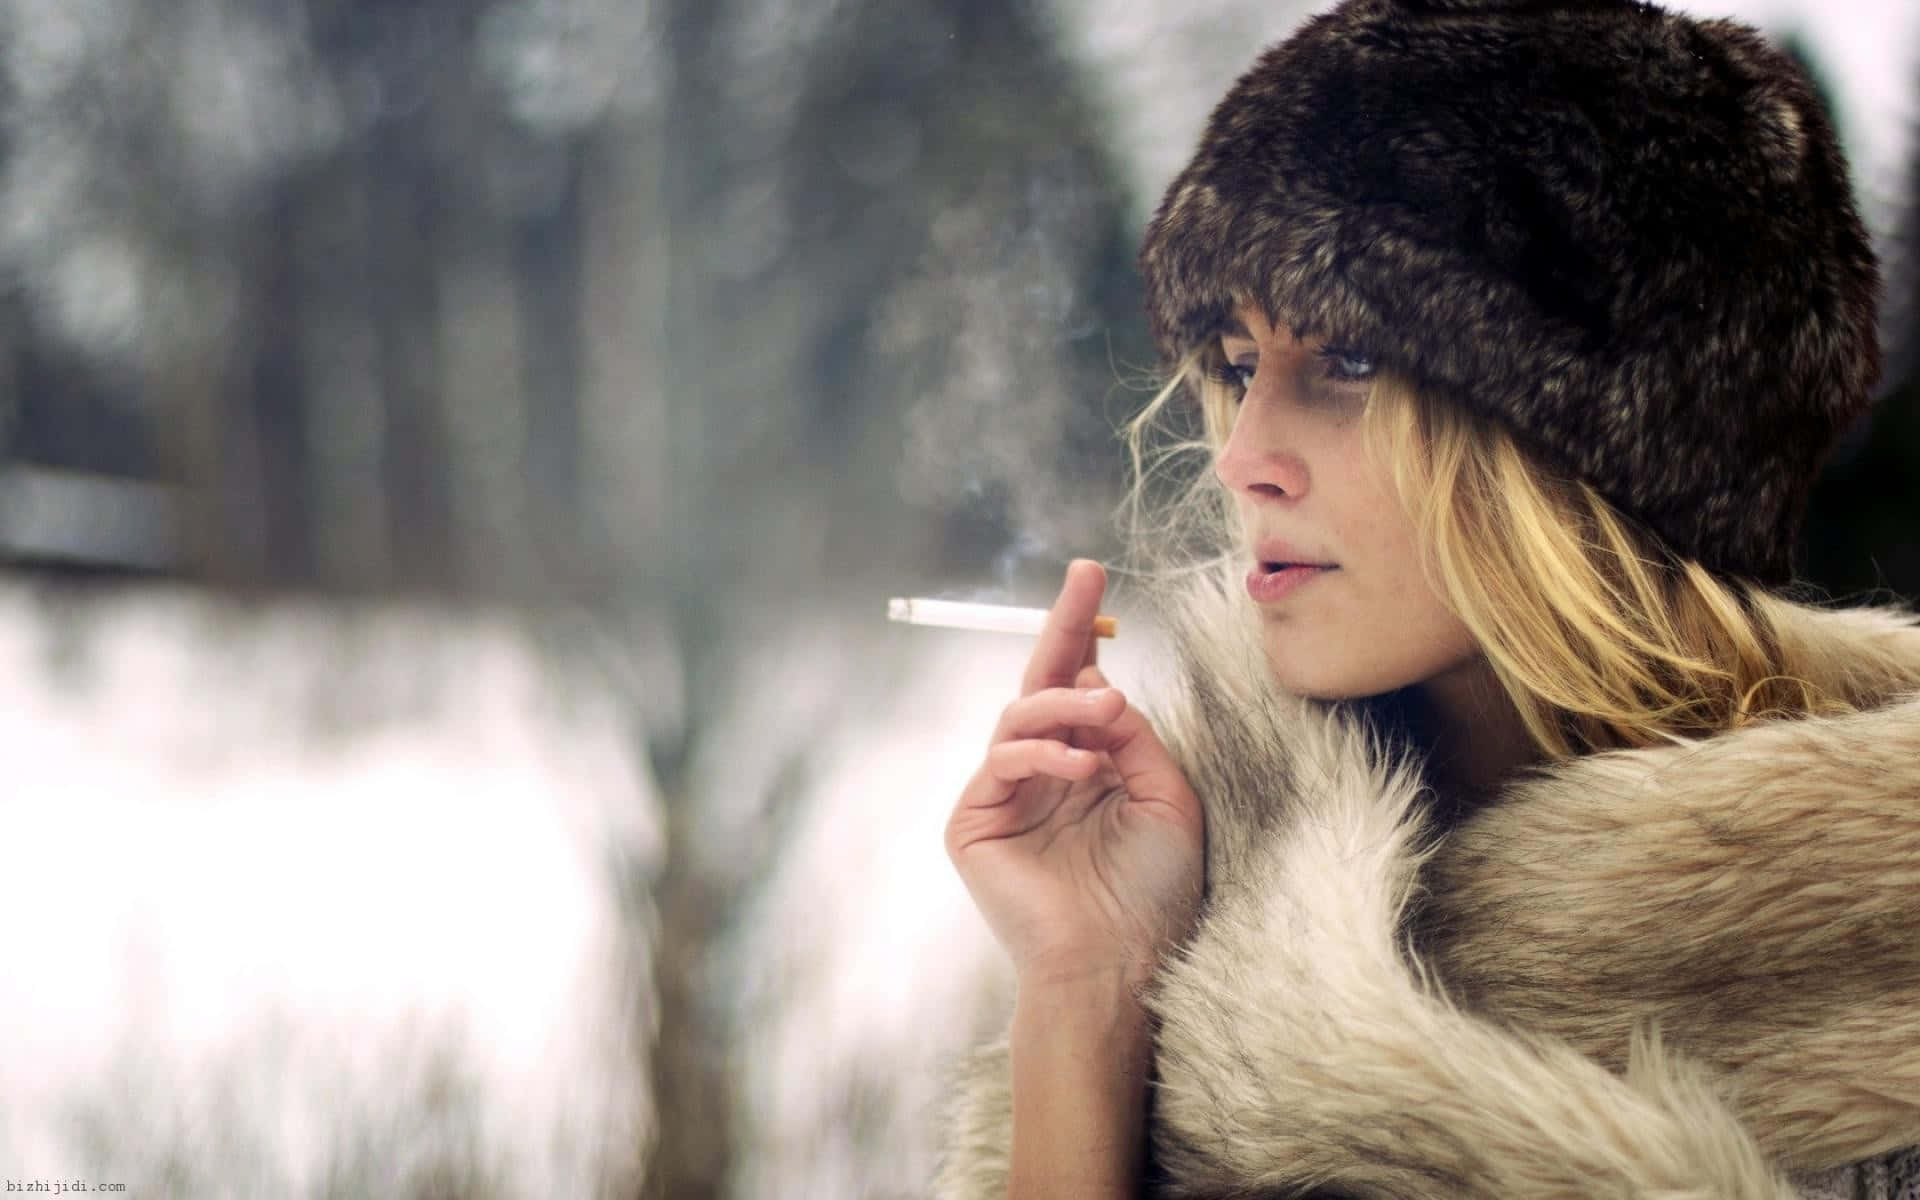 Winter Clothing Girl Smoking